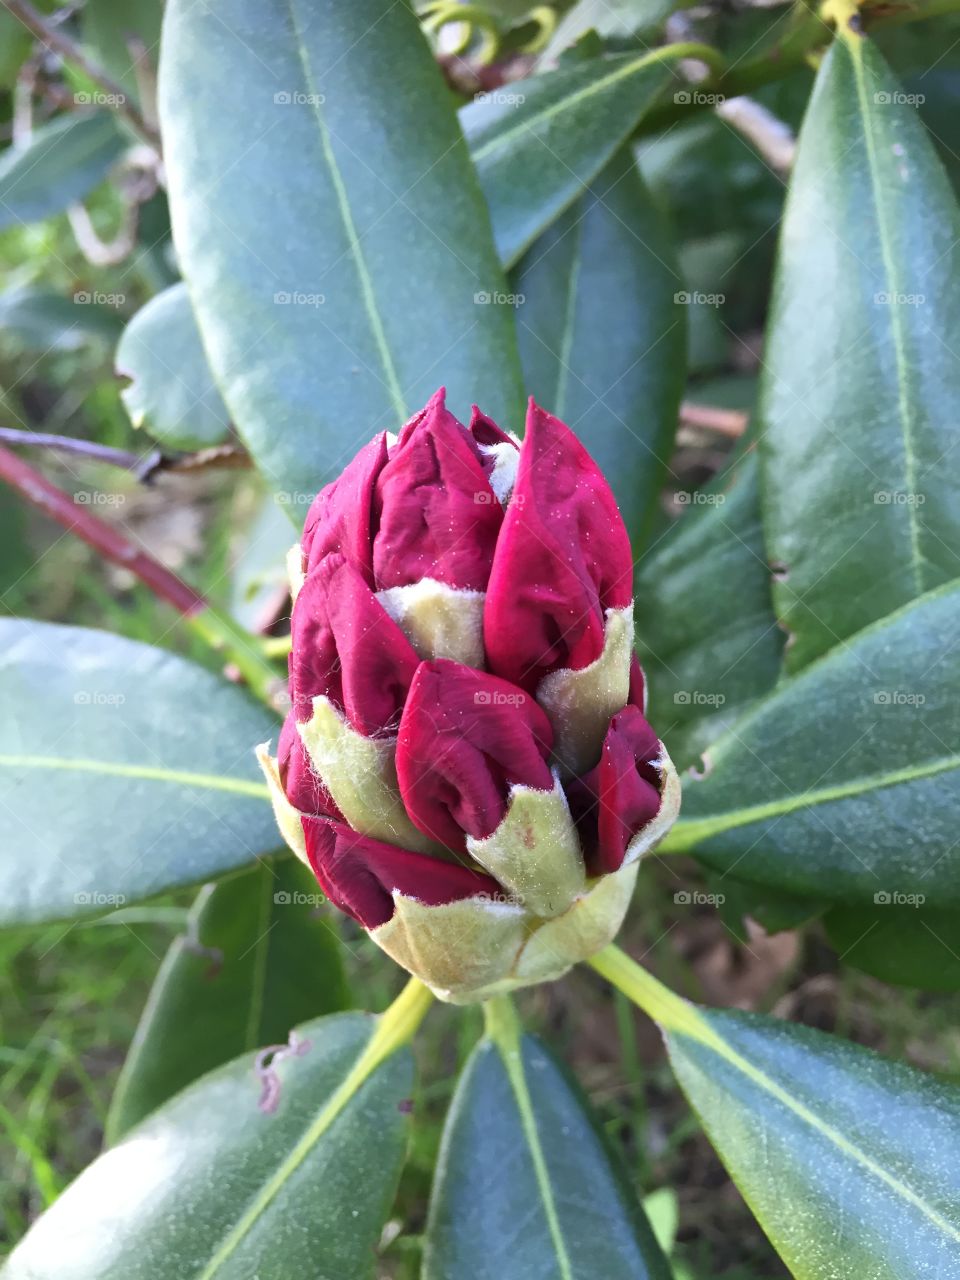 Rhododendron in my garden 